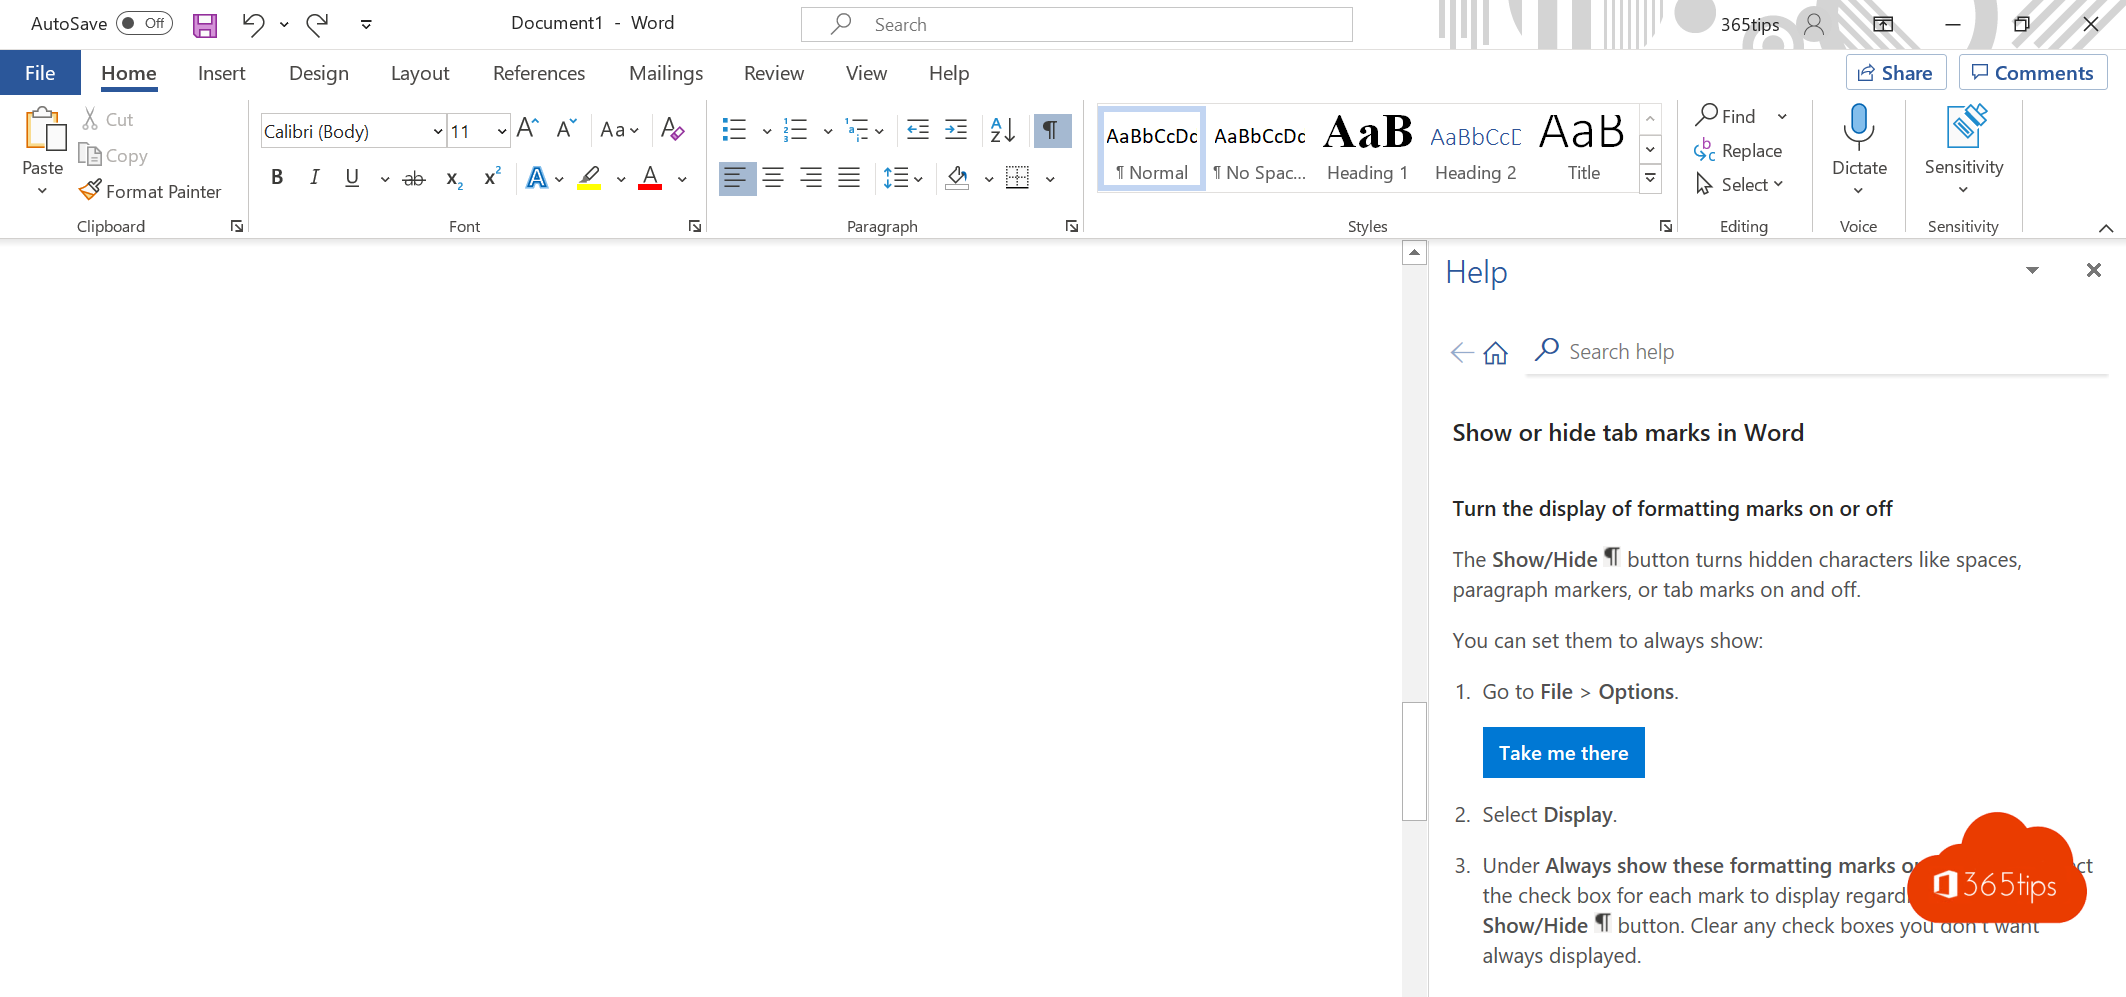 ¿Cómo eliminar una página en Microsoft Word?